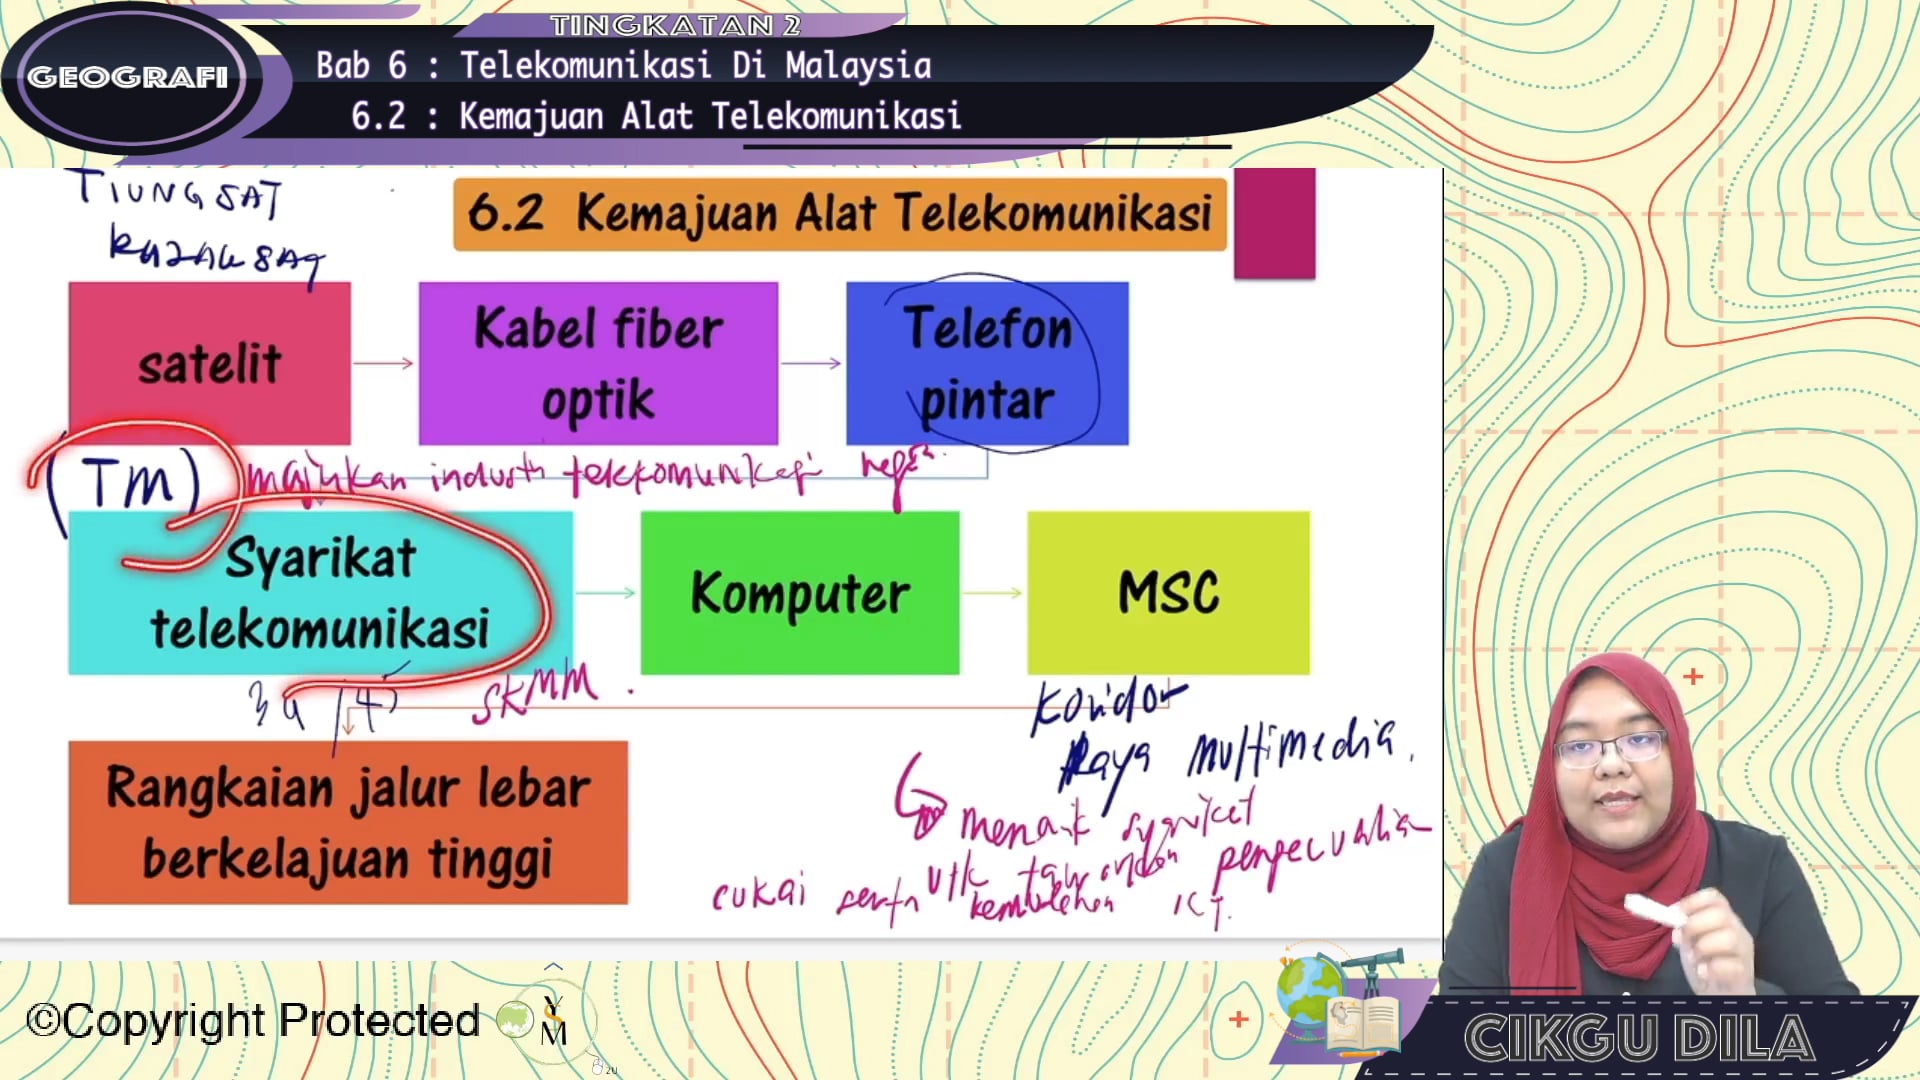 kemajuan alat telekomunikasi di malaysia